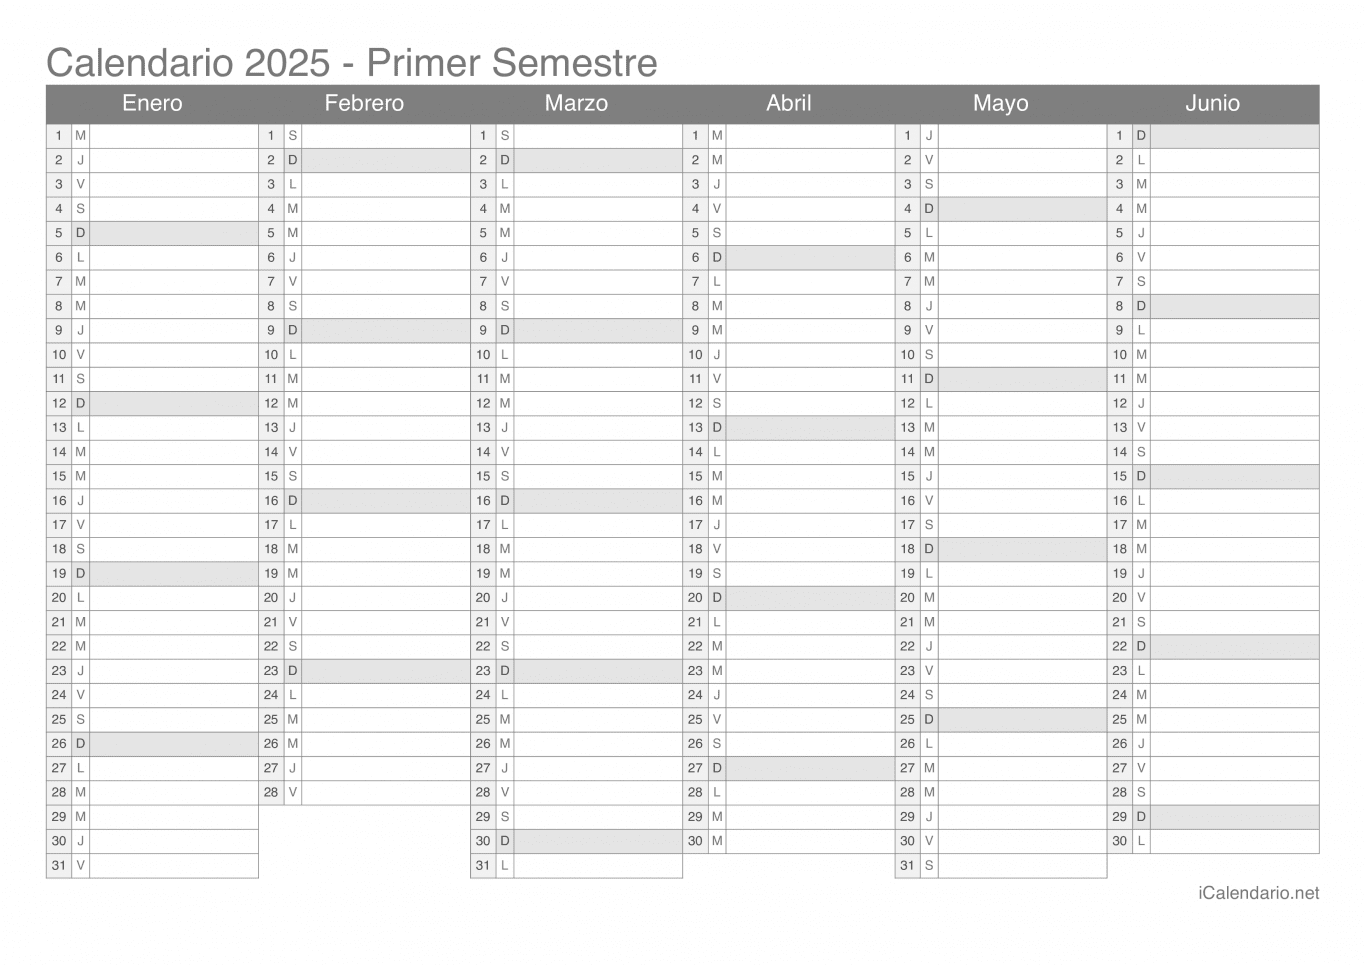 Calendario por semestre 2025